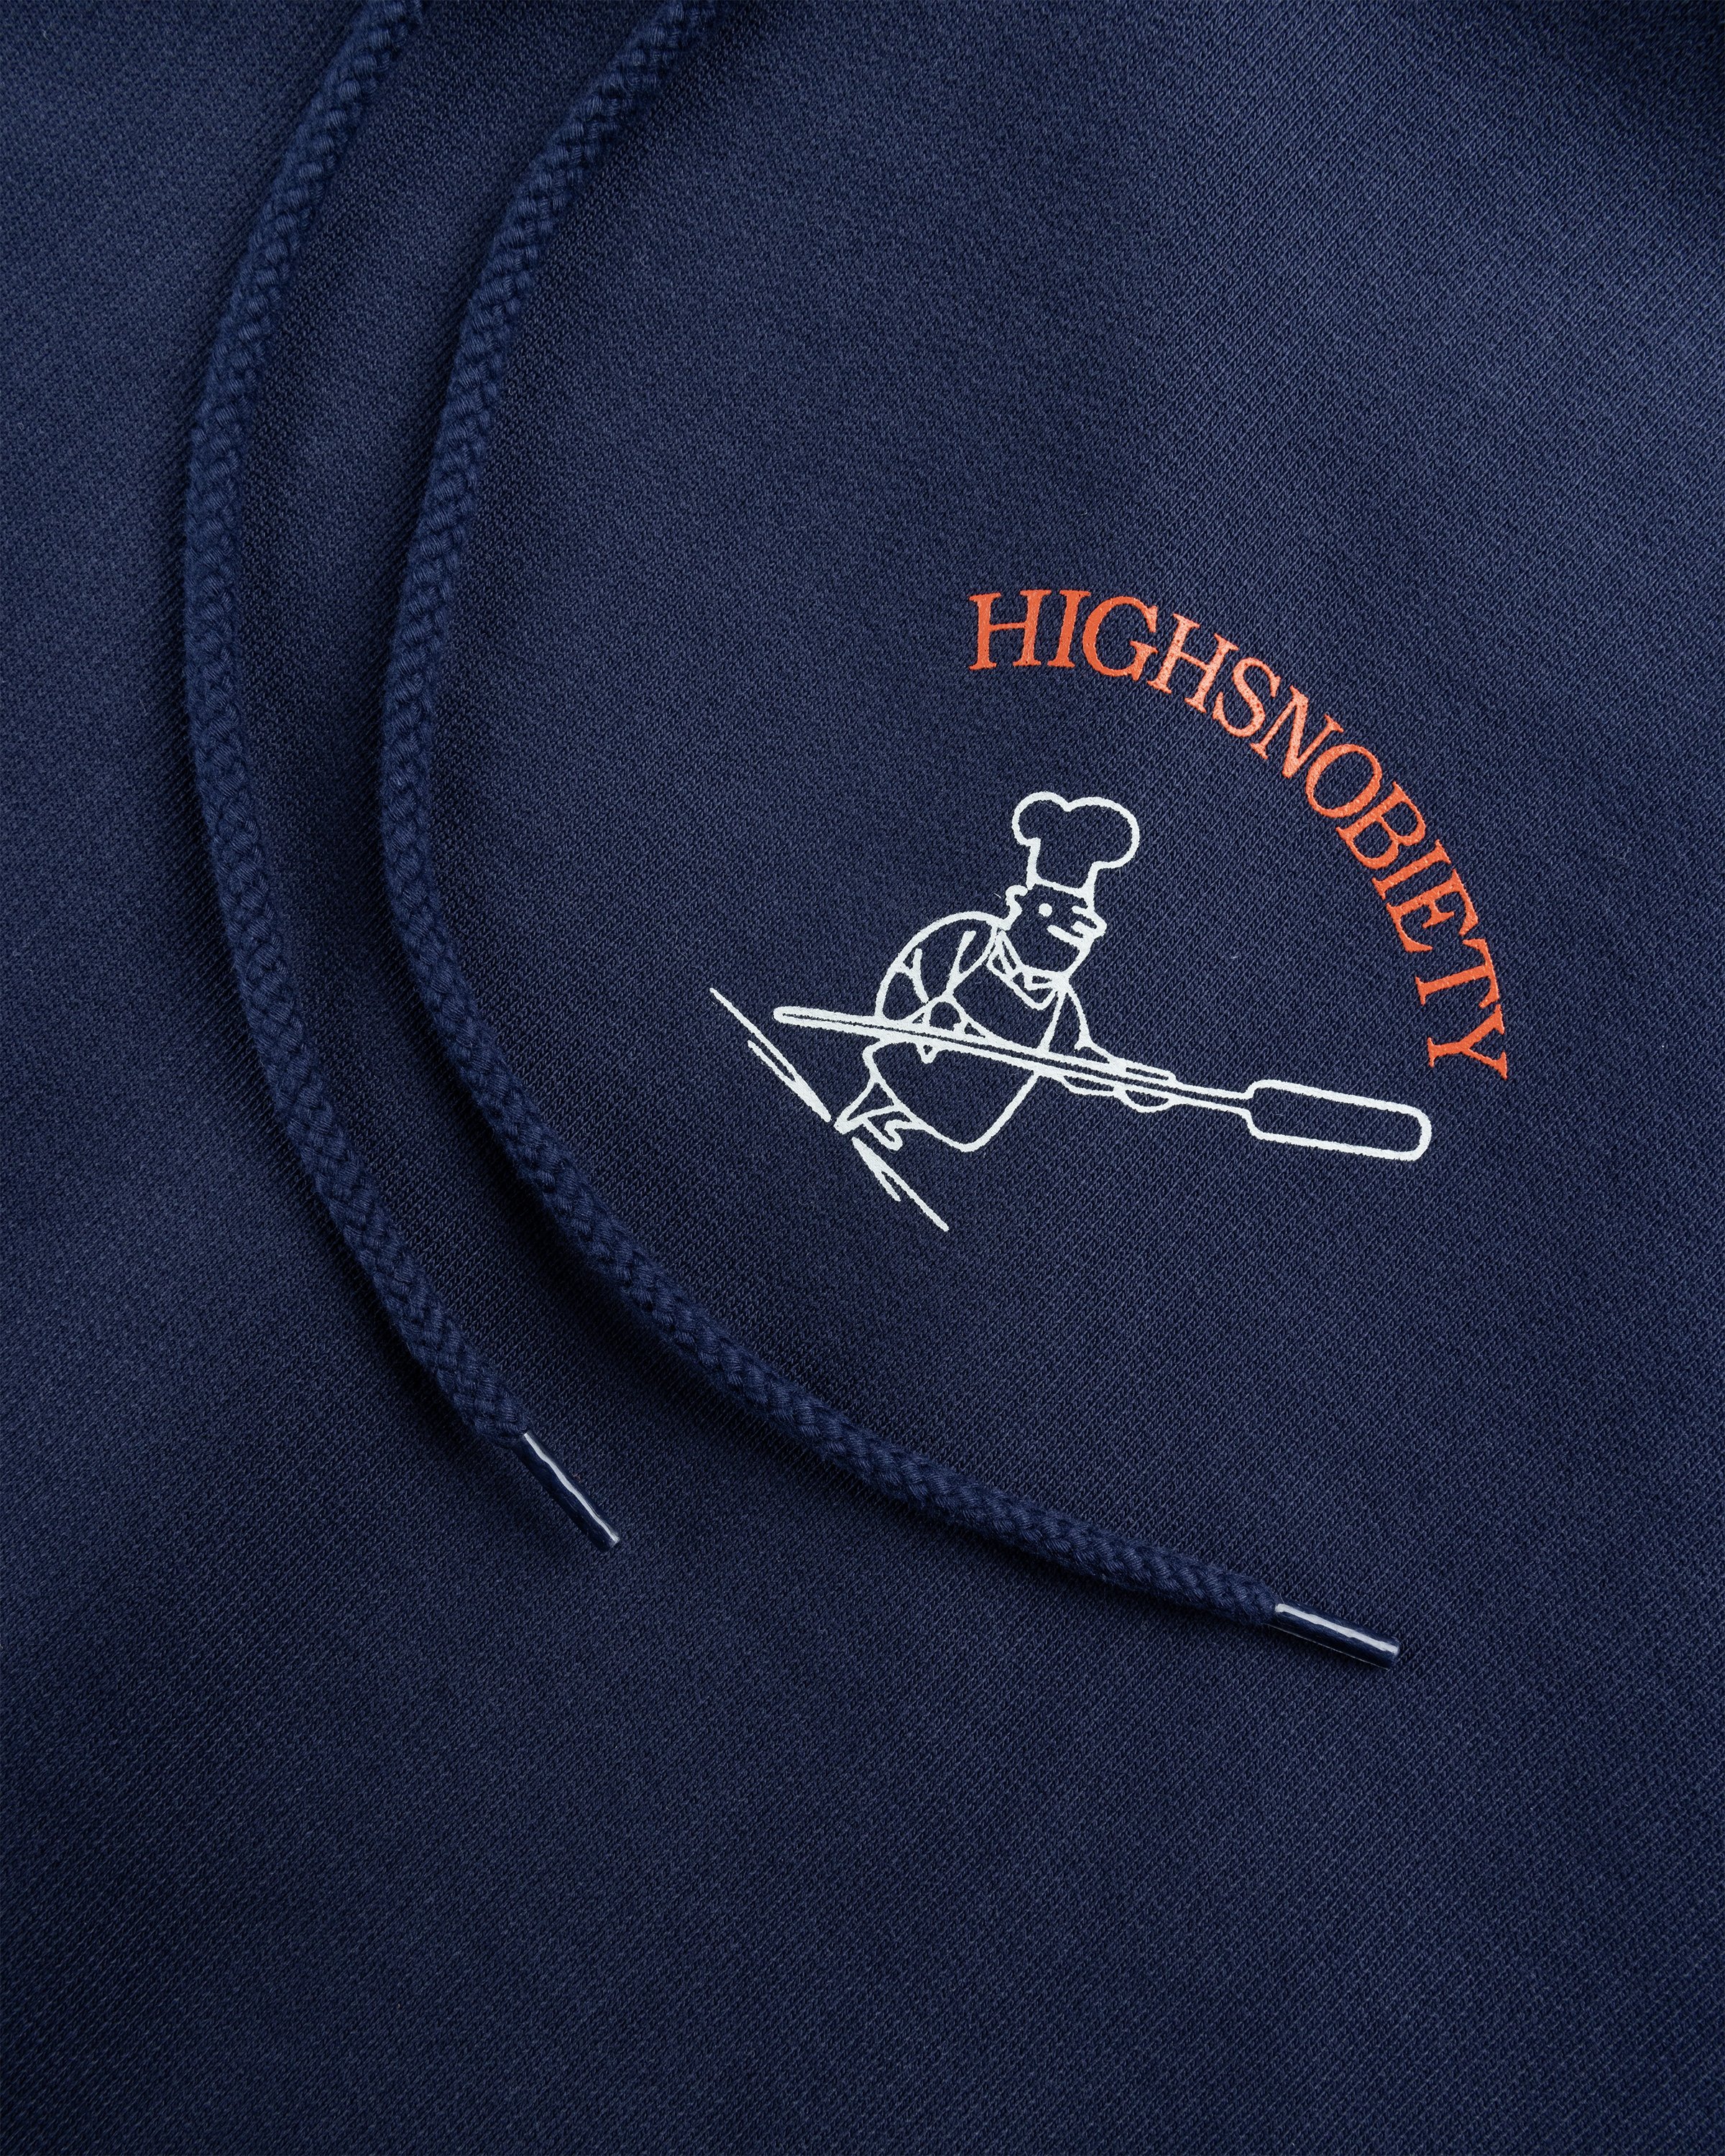 Beigel Bake x Highsnobiety - Navy Hoodie - Clothing -  - Image 7